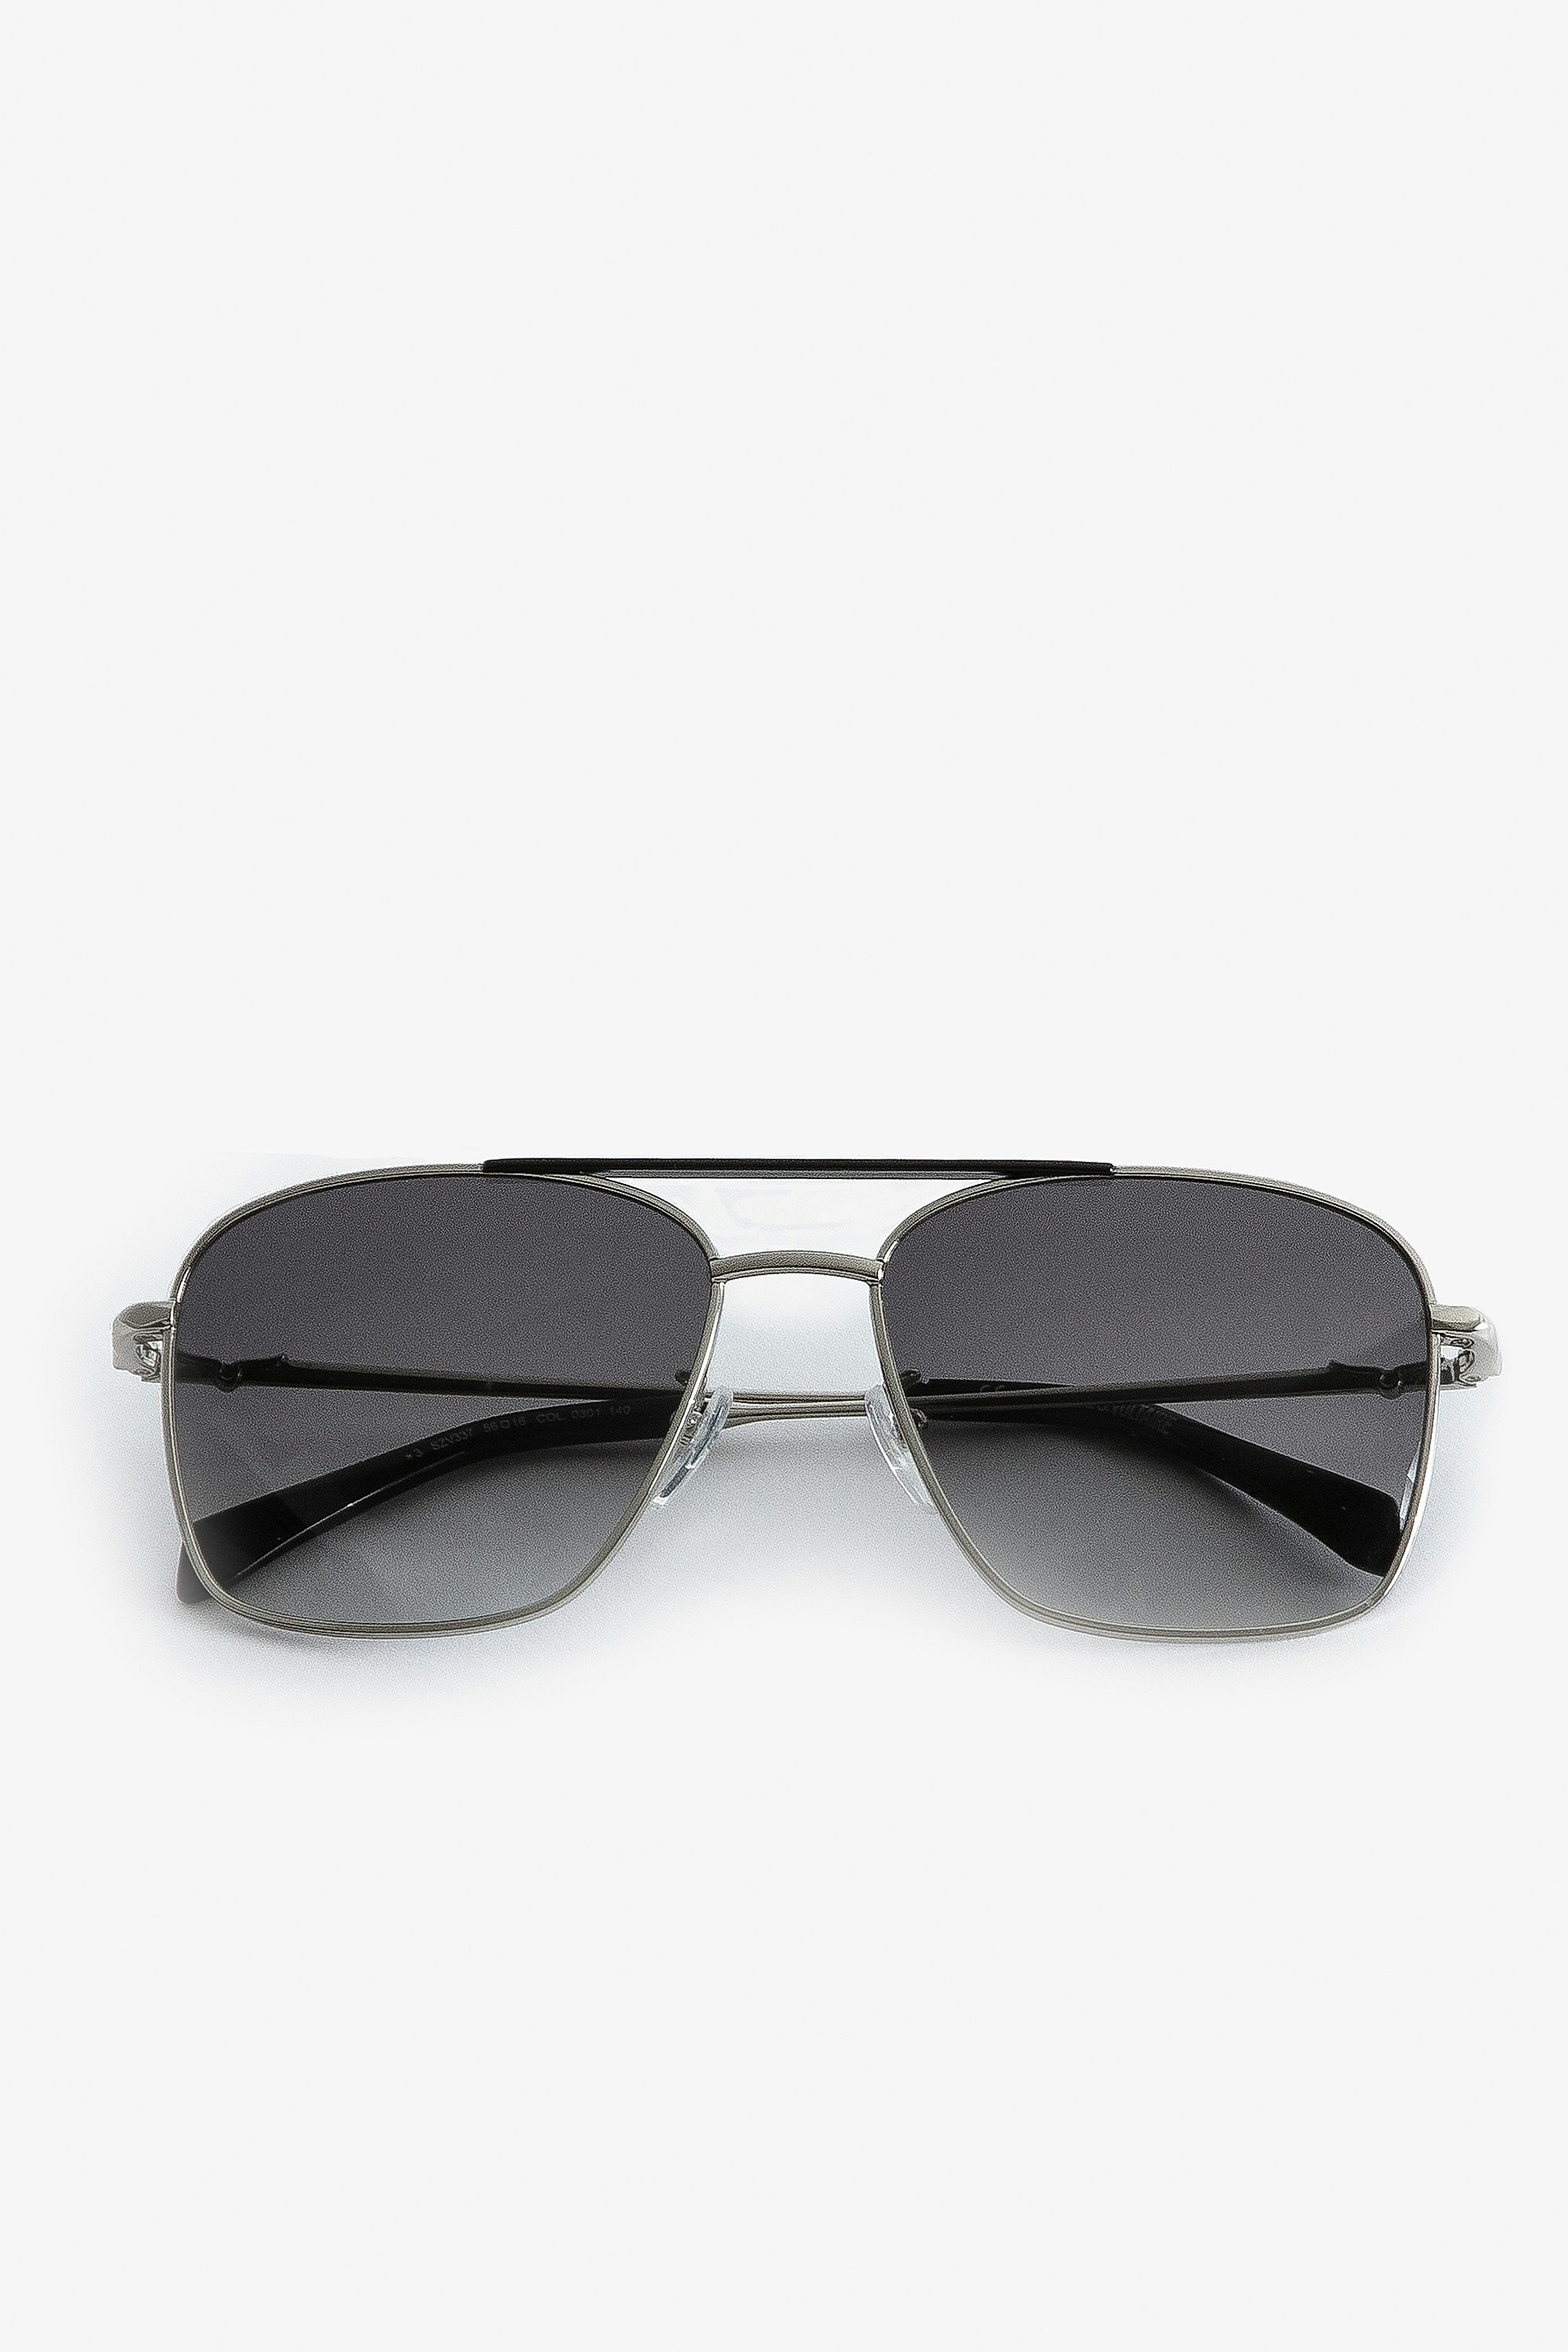 Sonnenbrille Wings Aviator - Unisex-Pilotensonnenbrille aus schwarzem Metall mit Rauchgläsern.